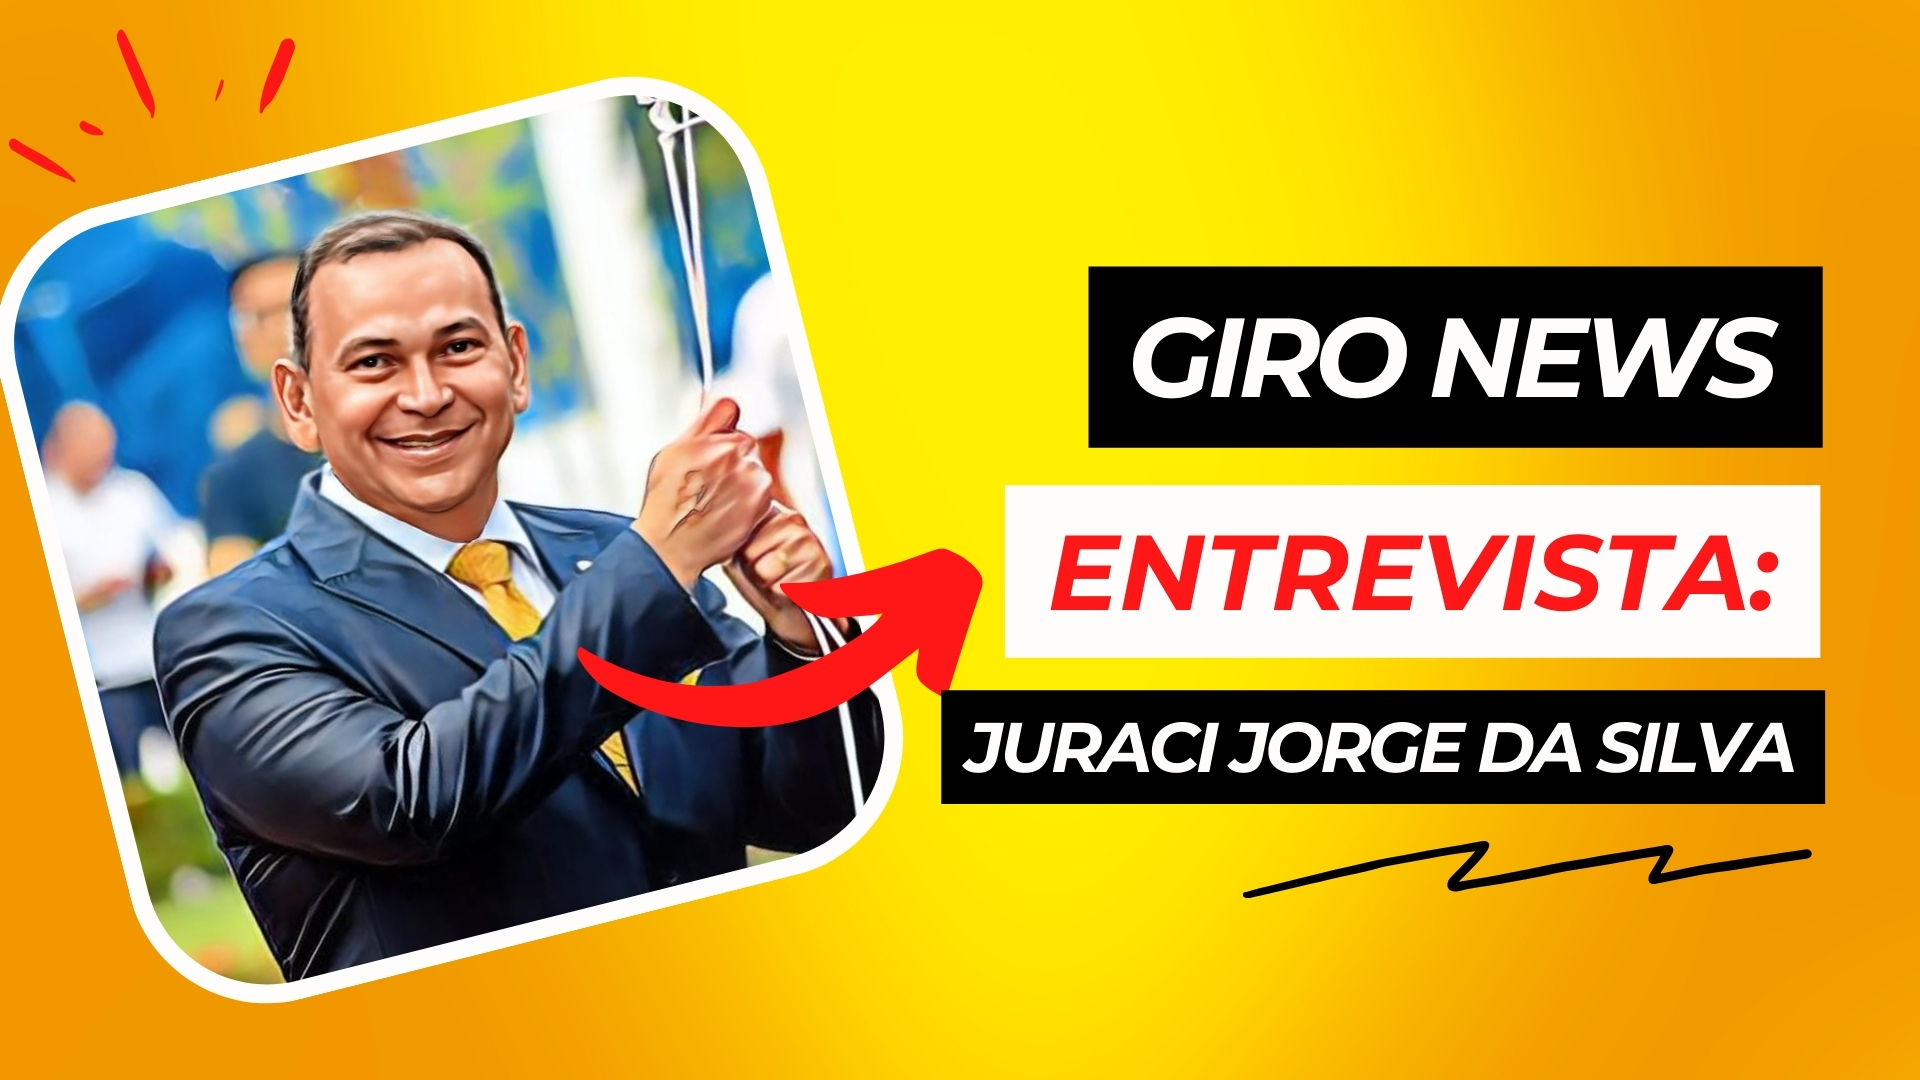 Giro News entrevista: Juraci Jorge da Silva - News Rondônia